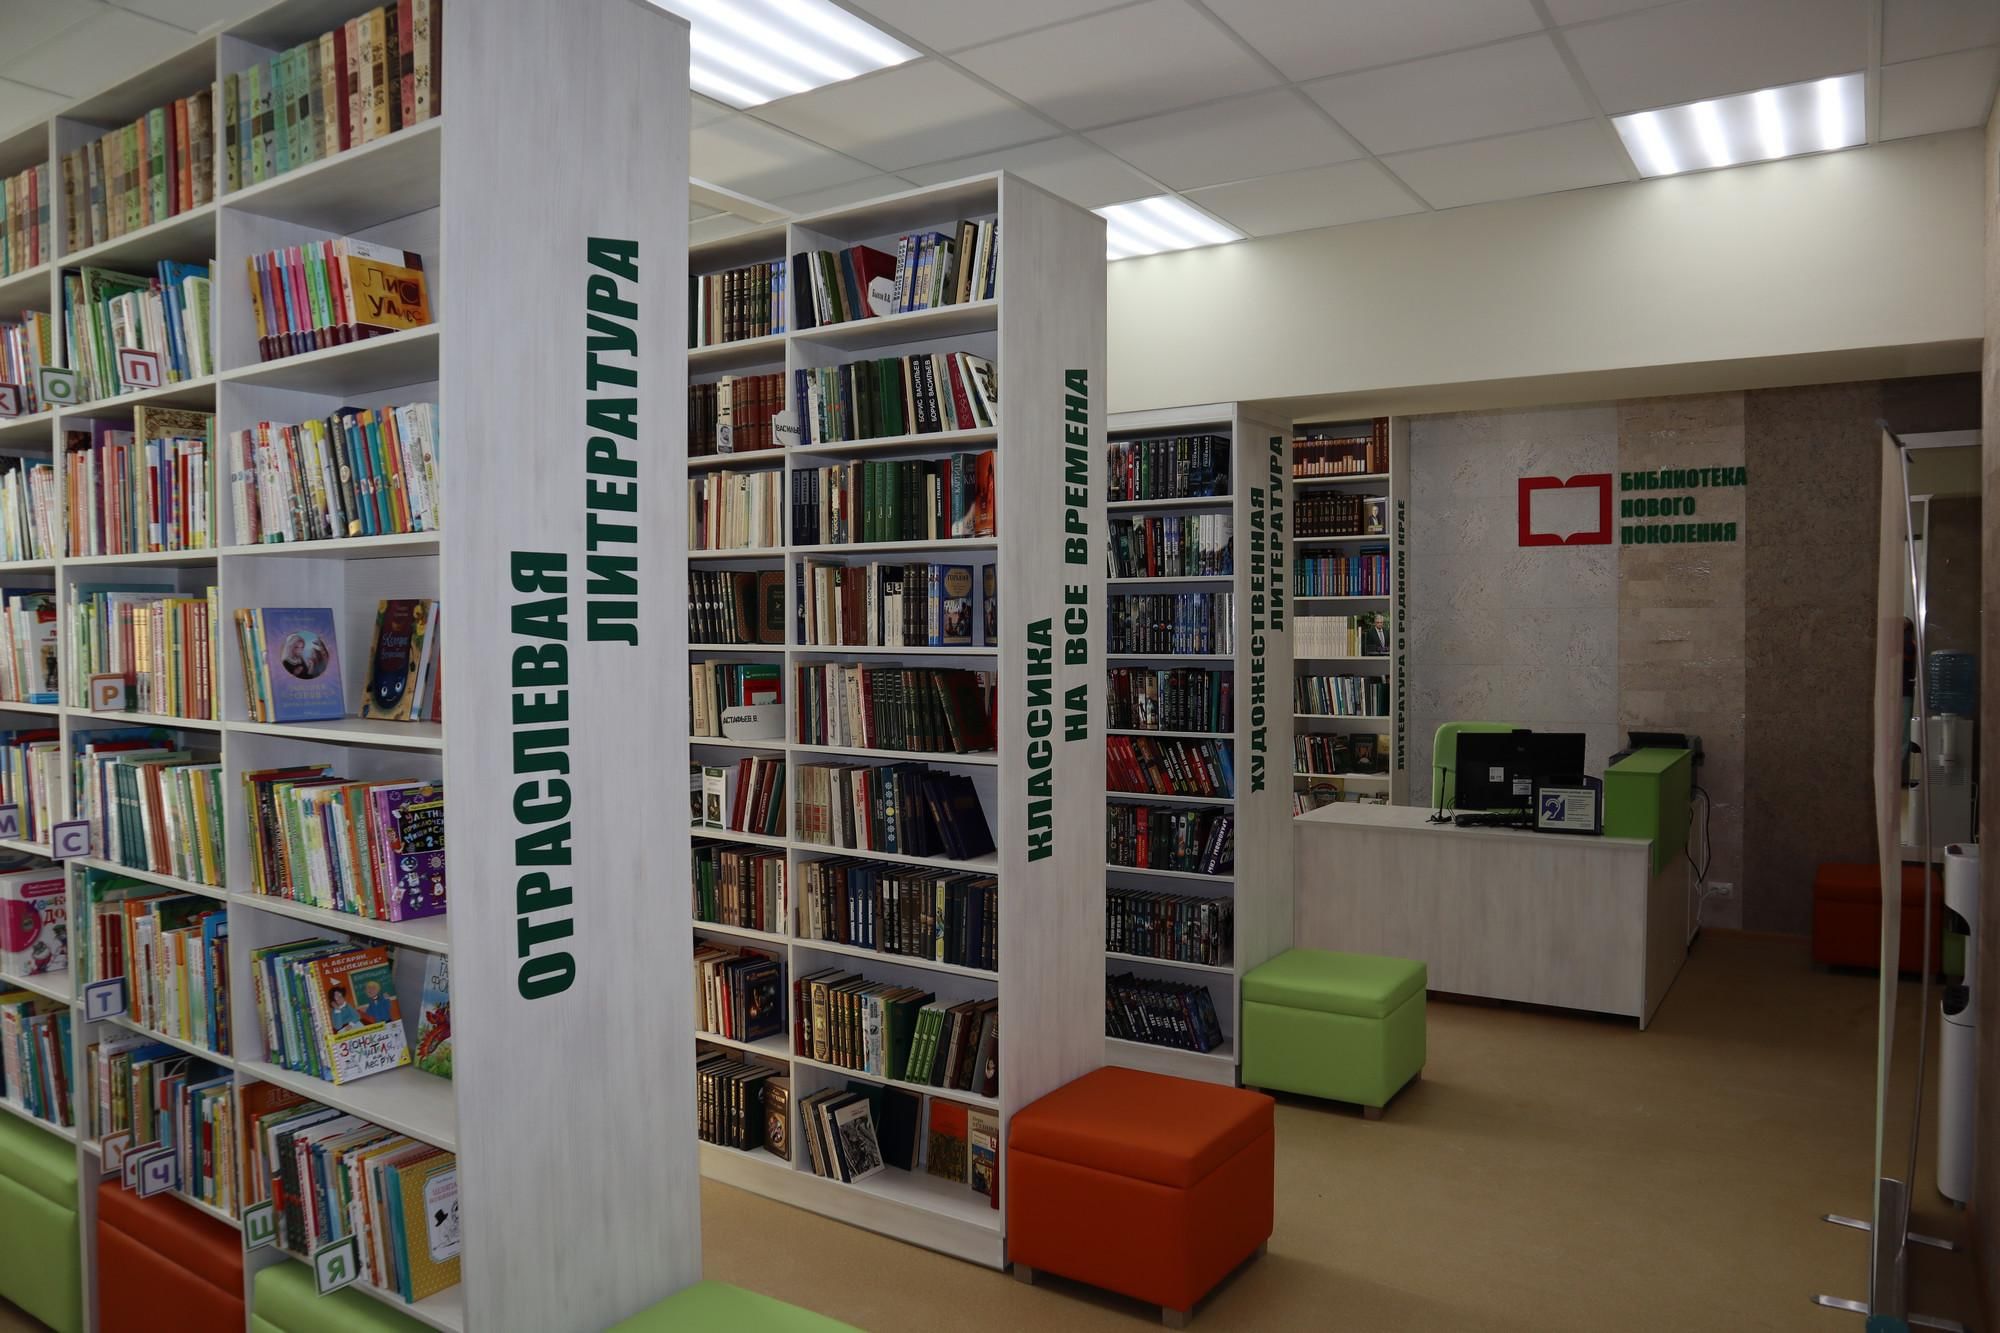 Библиотека открывалась в восемь. Библиотека Октябрьского района. Новая библиотека. Открытие библиотеки. Модельная библиотека нового поколения.